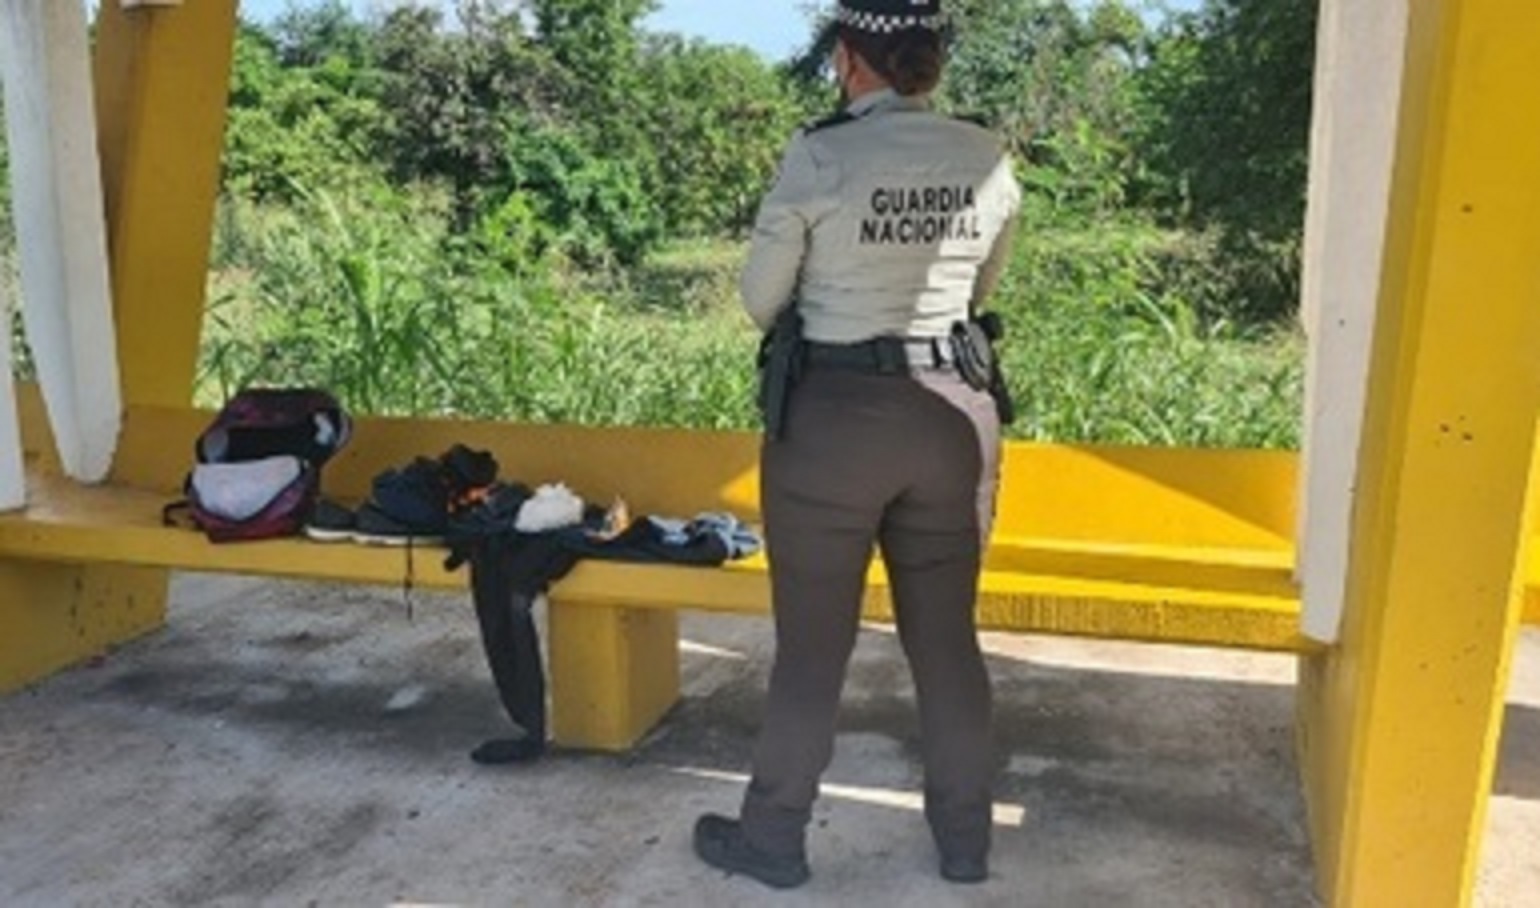 Guardia Nacional localiza cerca de medio kilo de probable metanfetamina abandonada en una parada de autobús